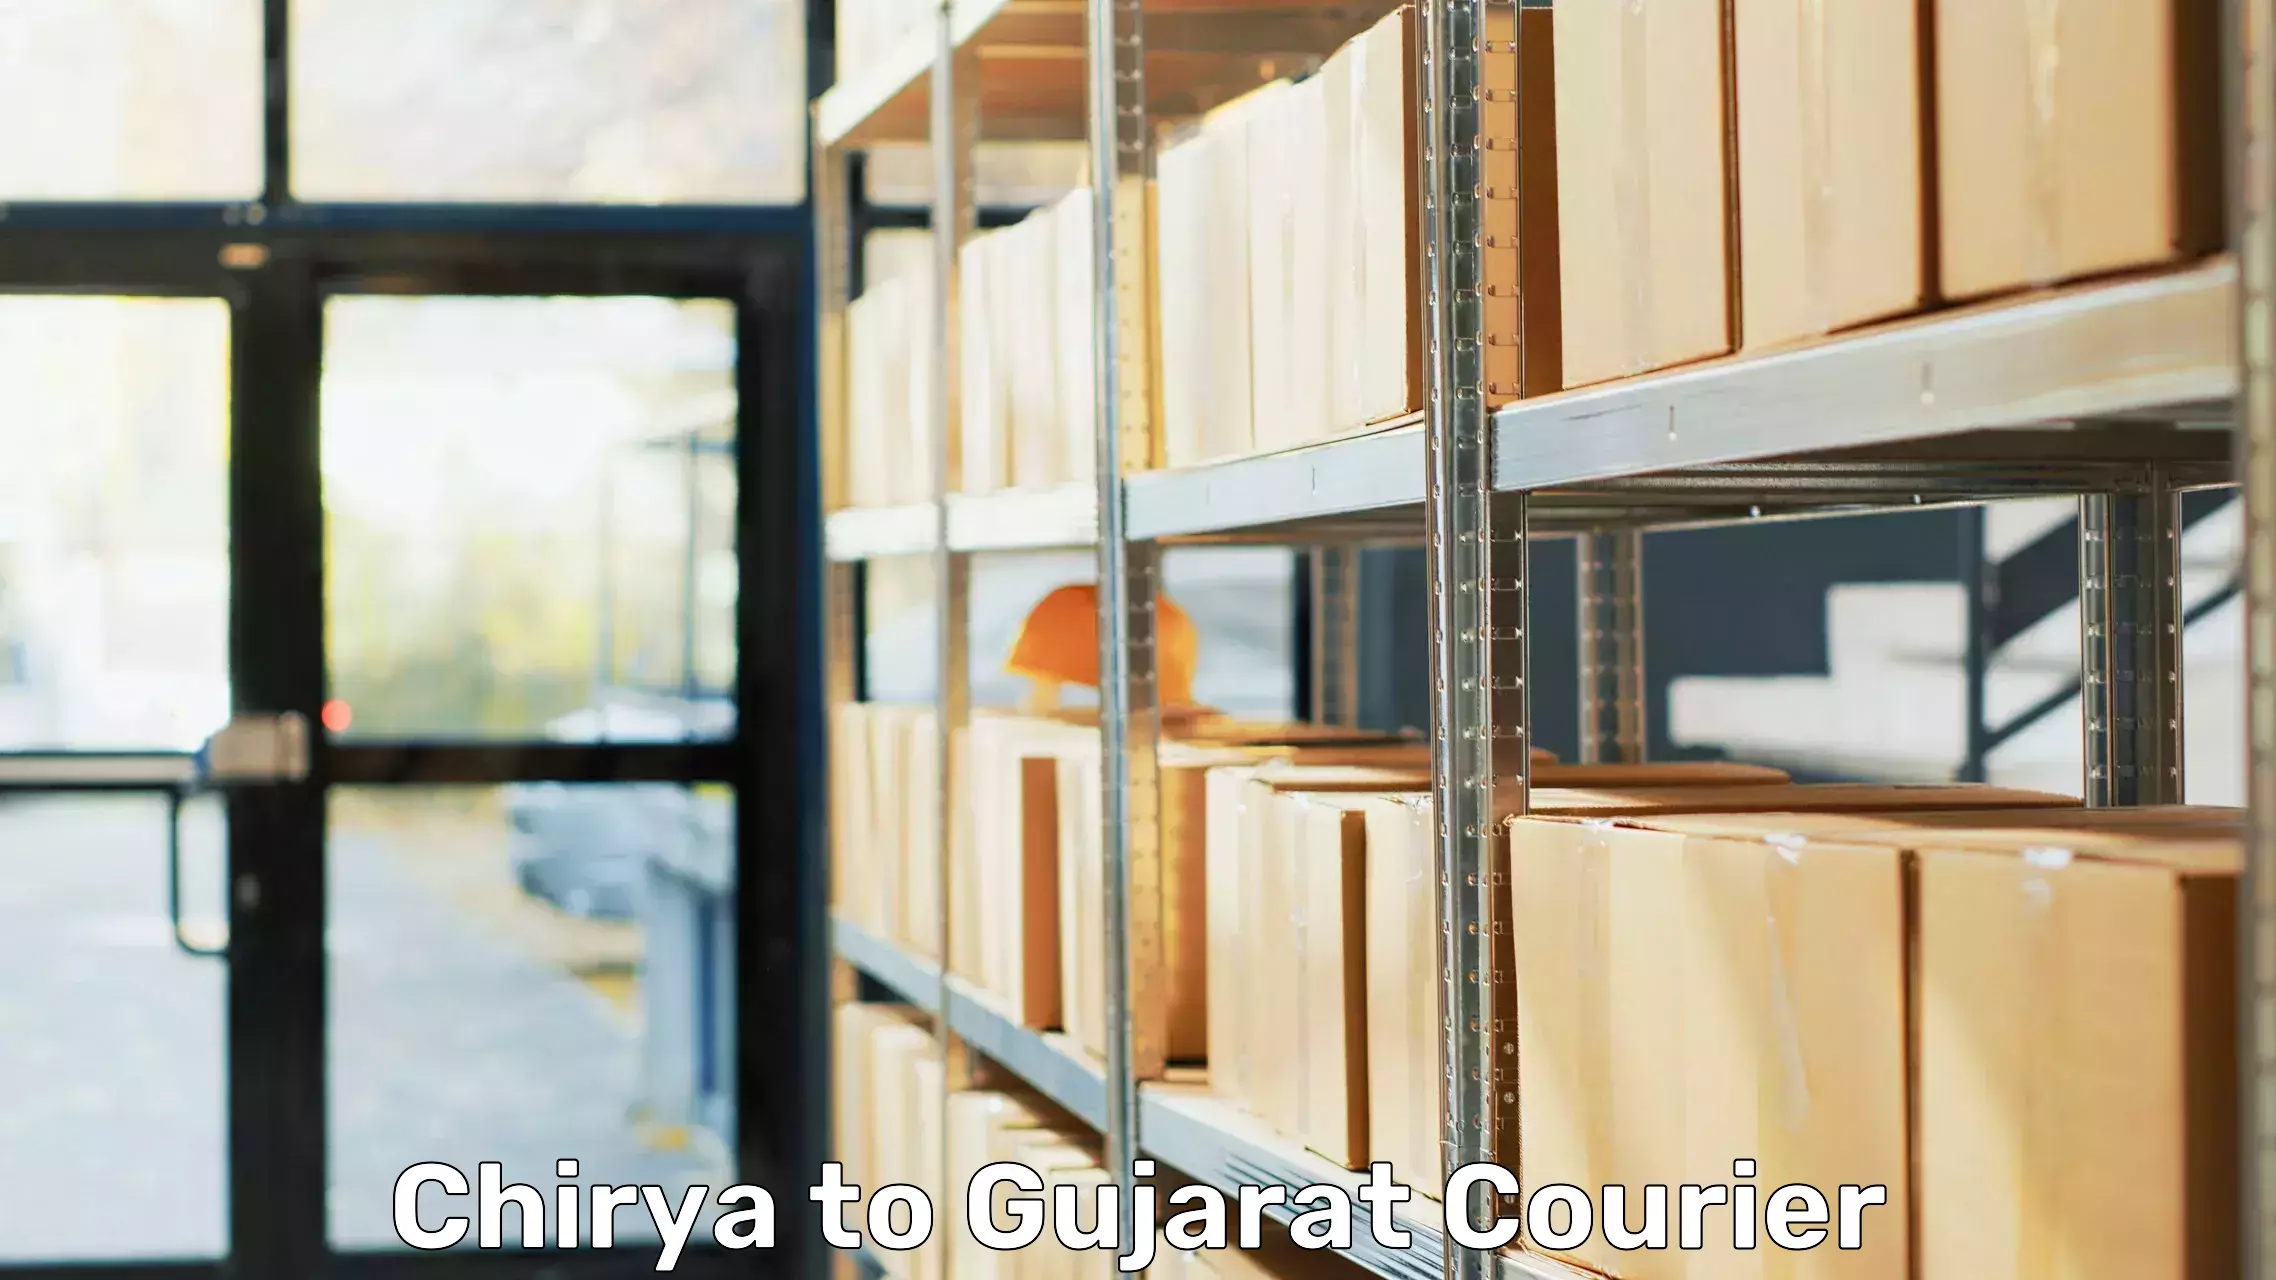 Furniture moving experts Chirya to Gujarat